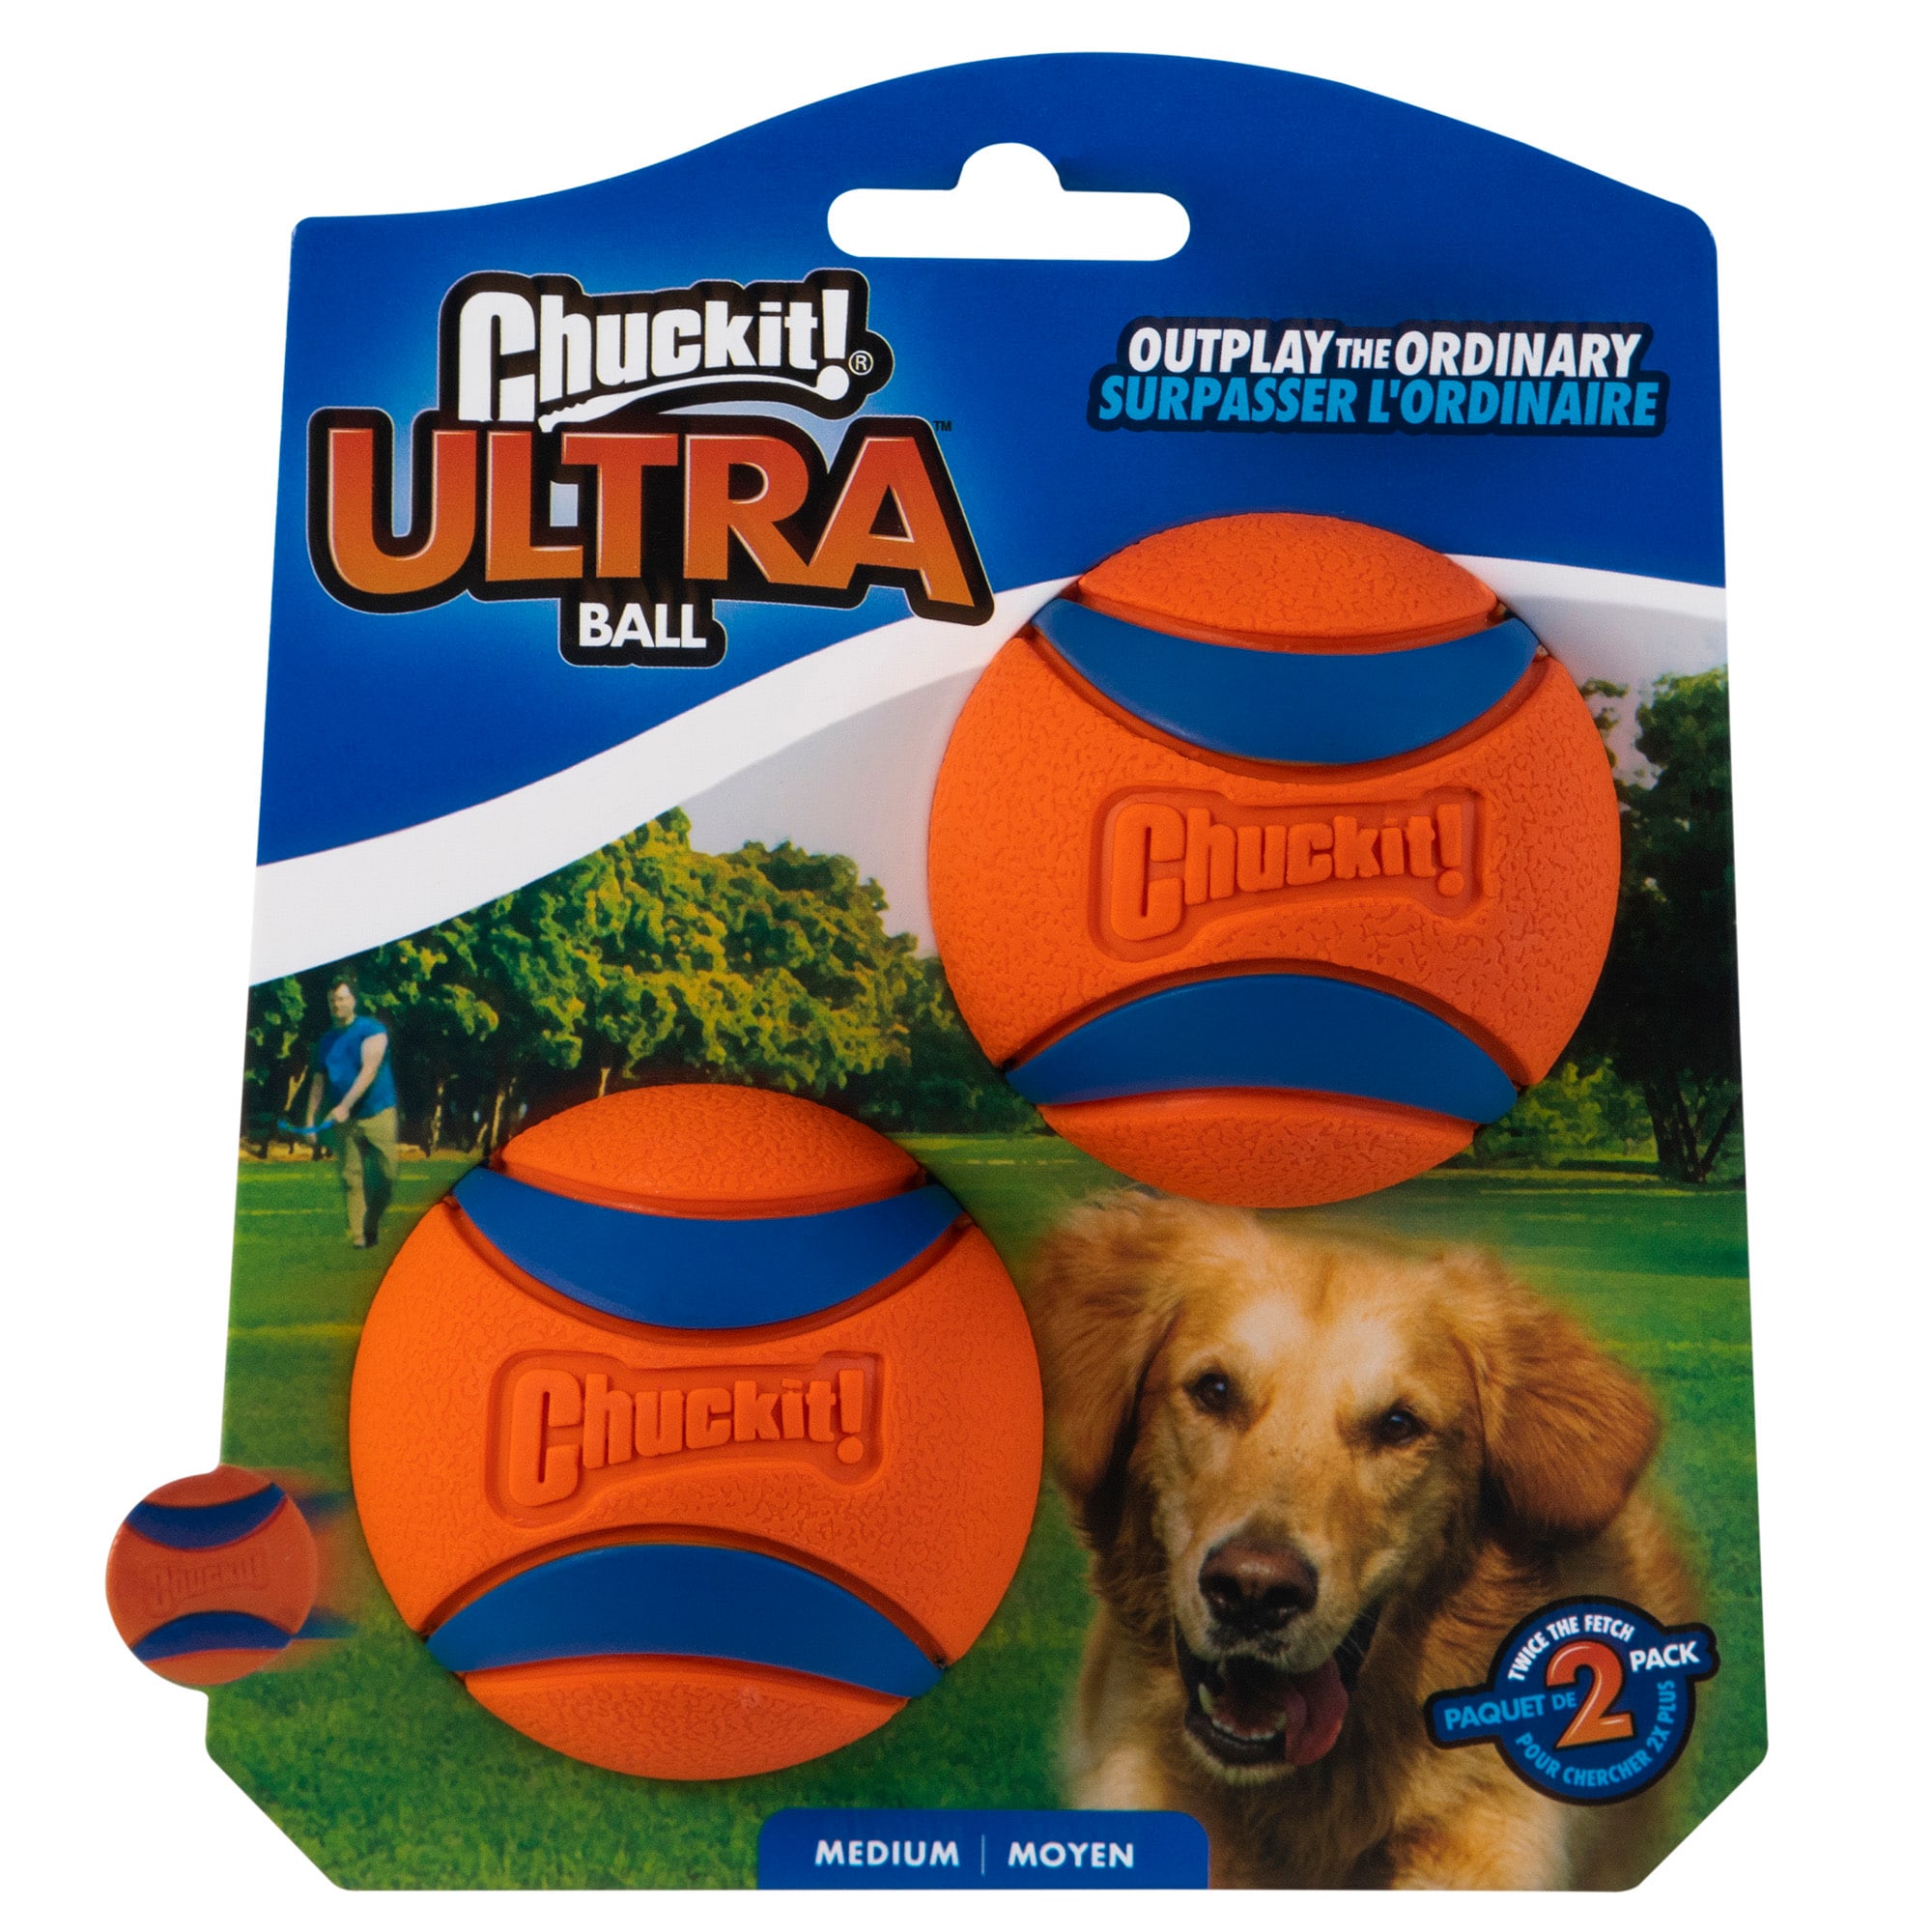 chuckit-ultra-ball-medium-pack-of-2-petco